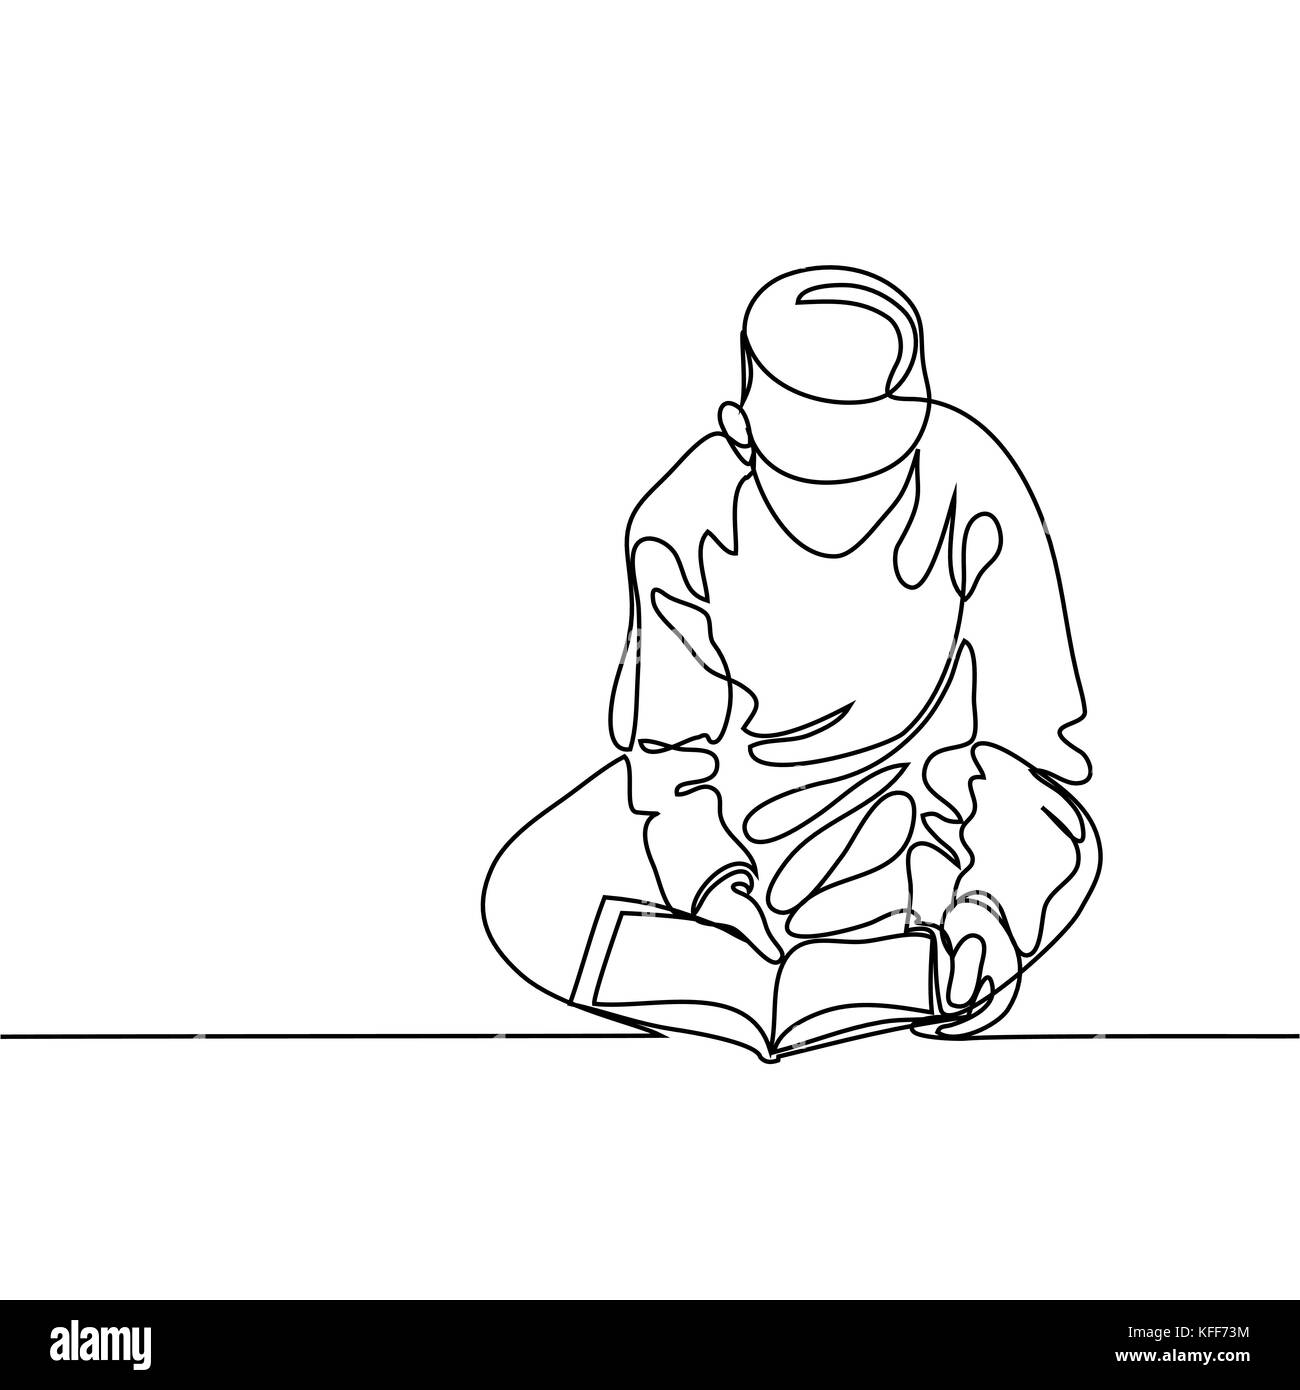 Junge in Fez lesen Koran. Durchgehende Linie zeichnen Vector Illustration Stock Vektor